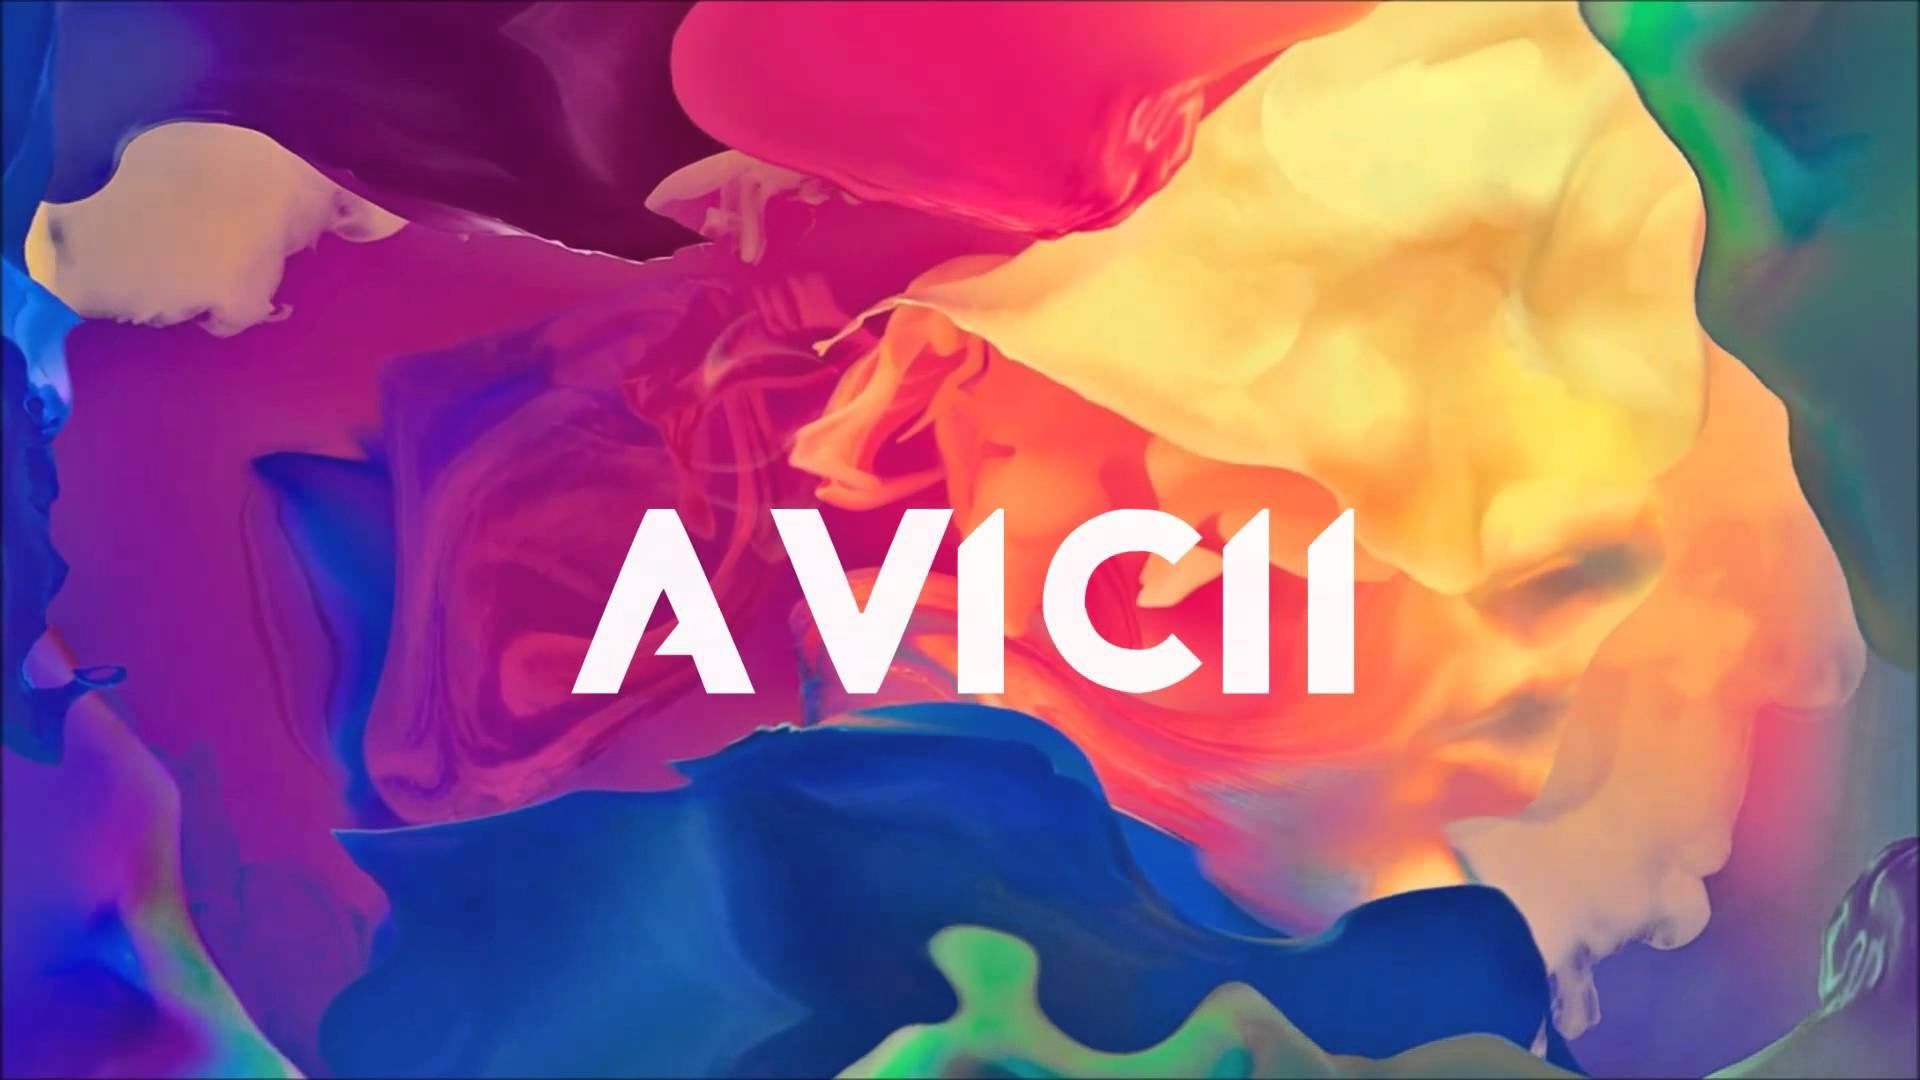 1000以上 Avicii 壁紙 Iphone 高画質 クールな犬とウォルペーパーの写真のコレクション